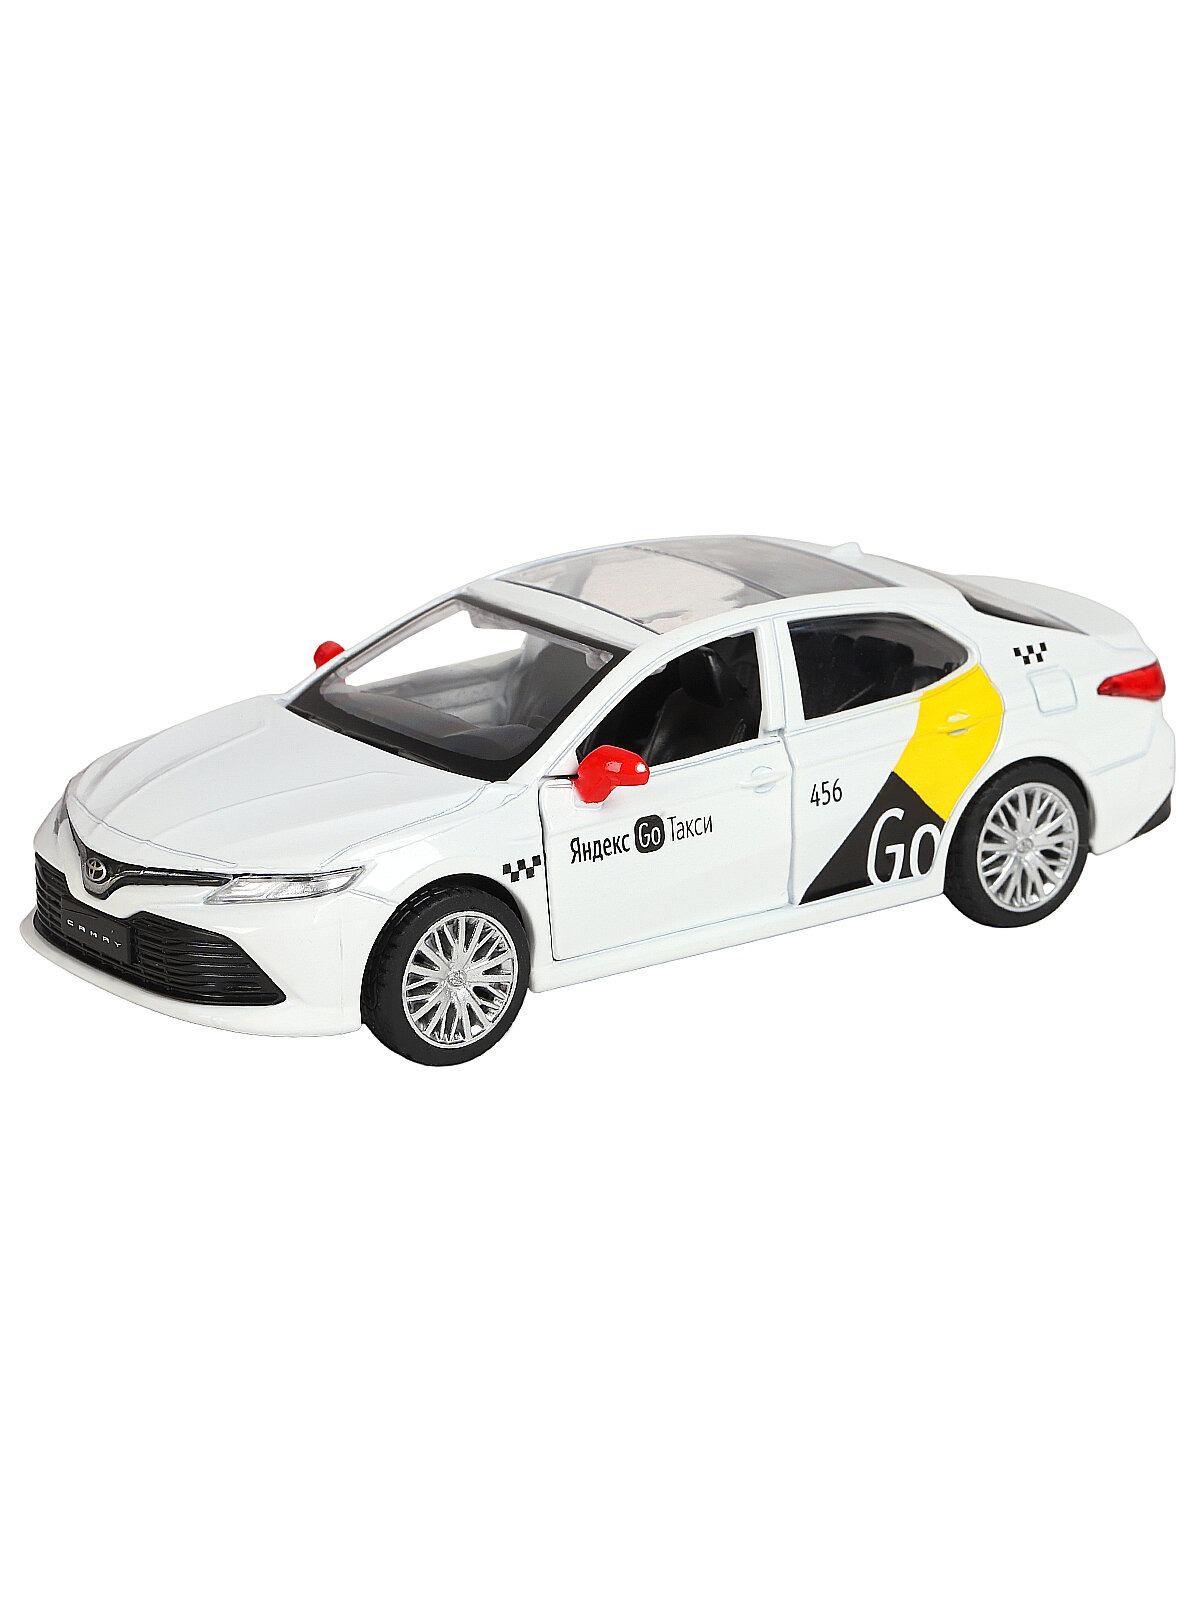 Машинка металлическая Яндекс GO 1:43 Toyota Camry озвучено Алисой цвет белый JB1251484 - фото 5